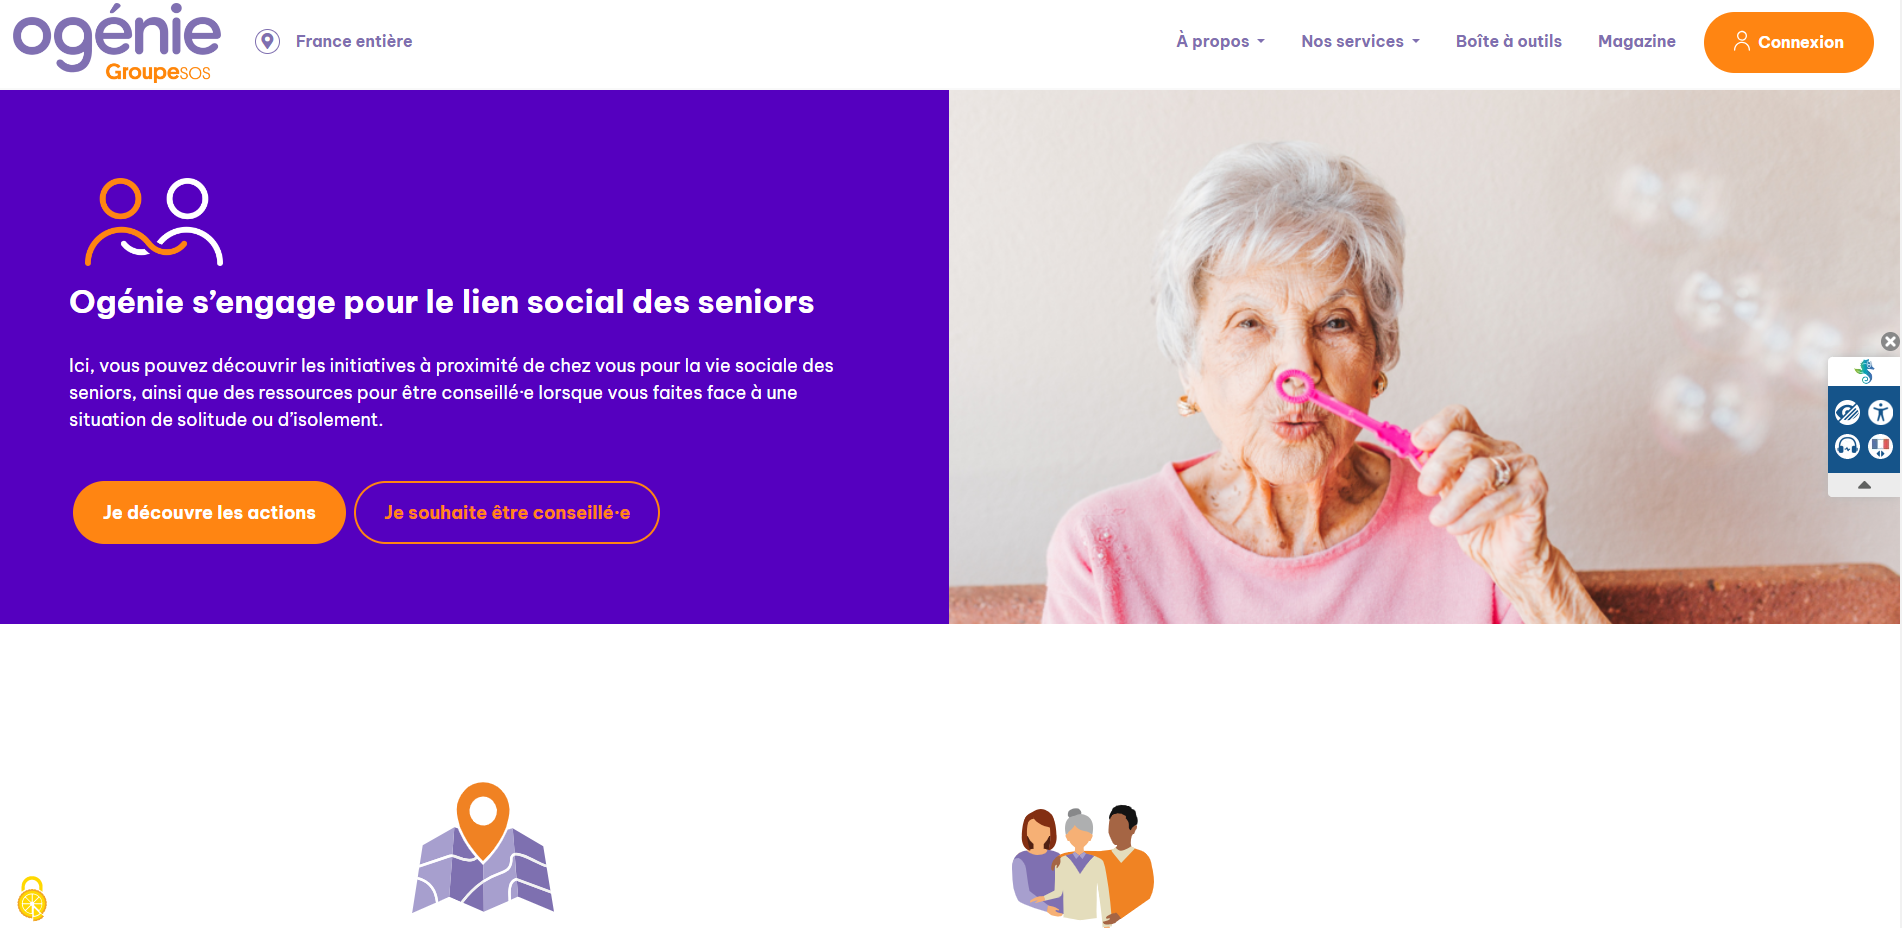 Ogenie.fr, le site pour la vie sociale des seniors, fête ses 8 mois de lancement en Seine-Saint-Denis !